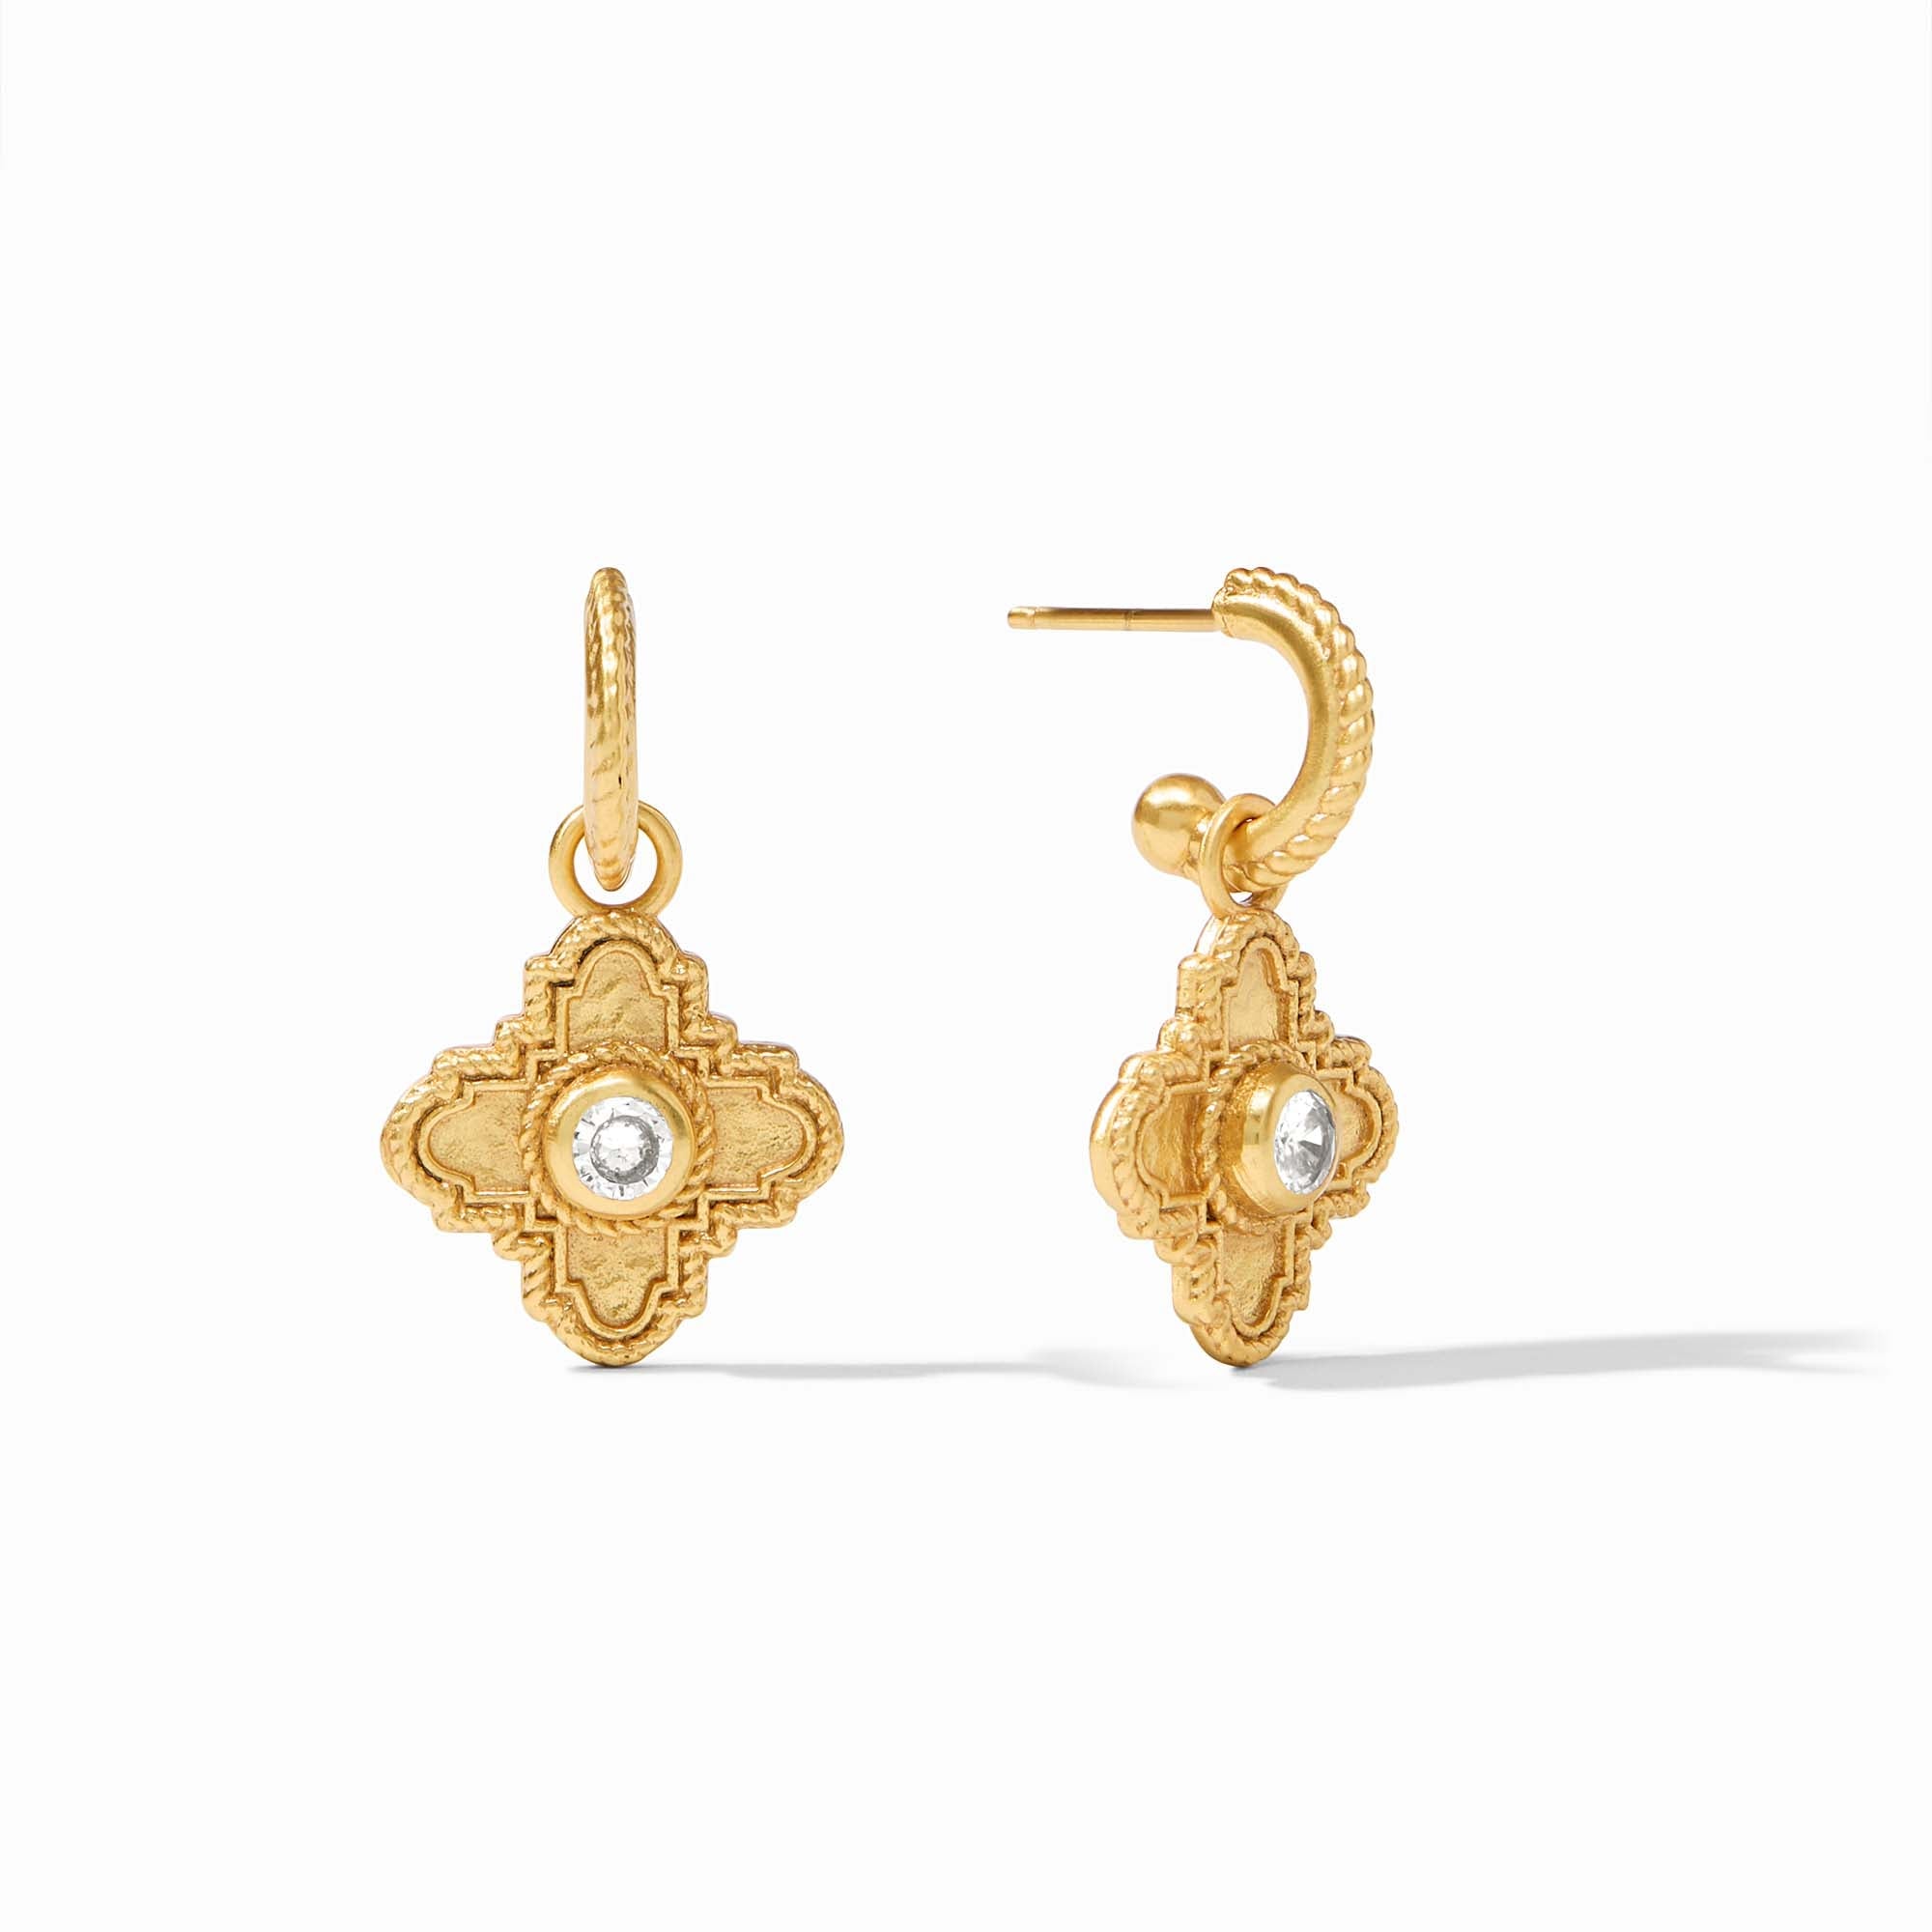 Theodora Hoop u0026 Charm Earrings | Julie Vos